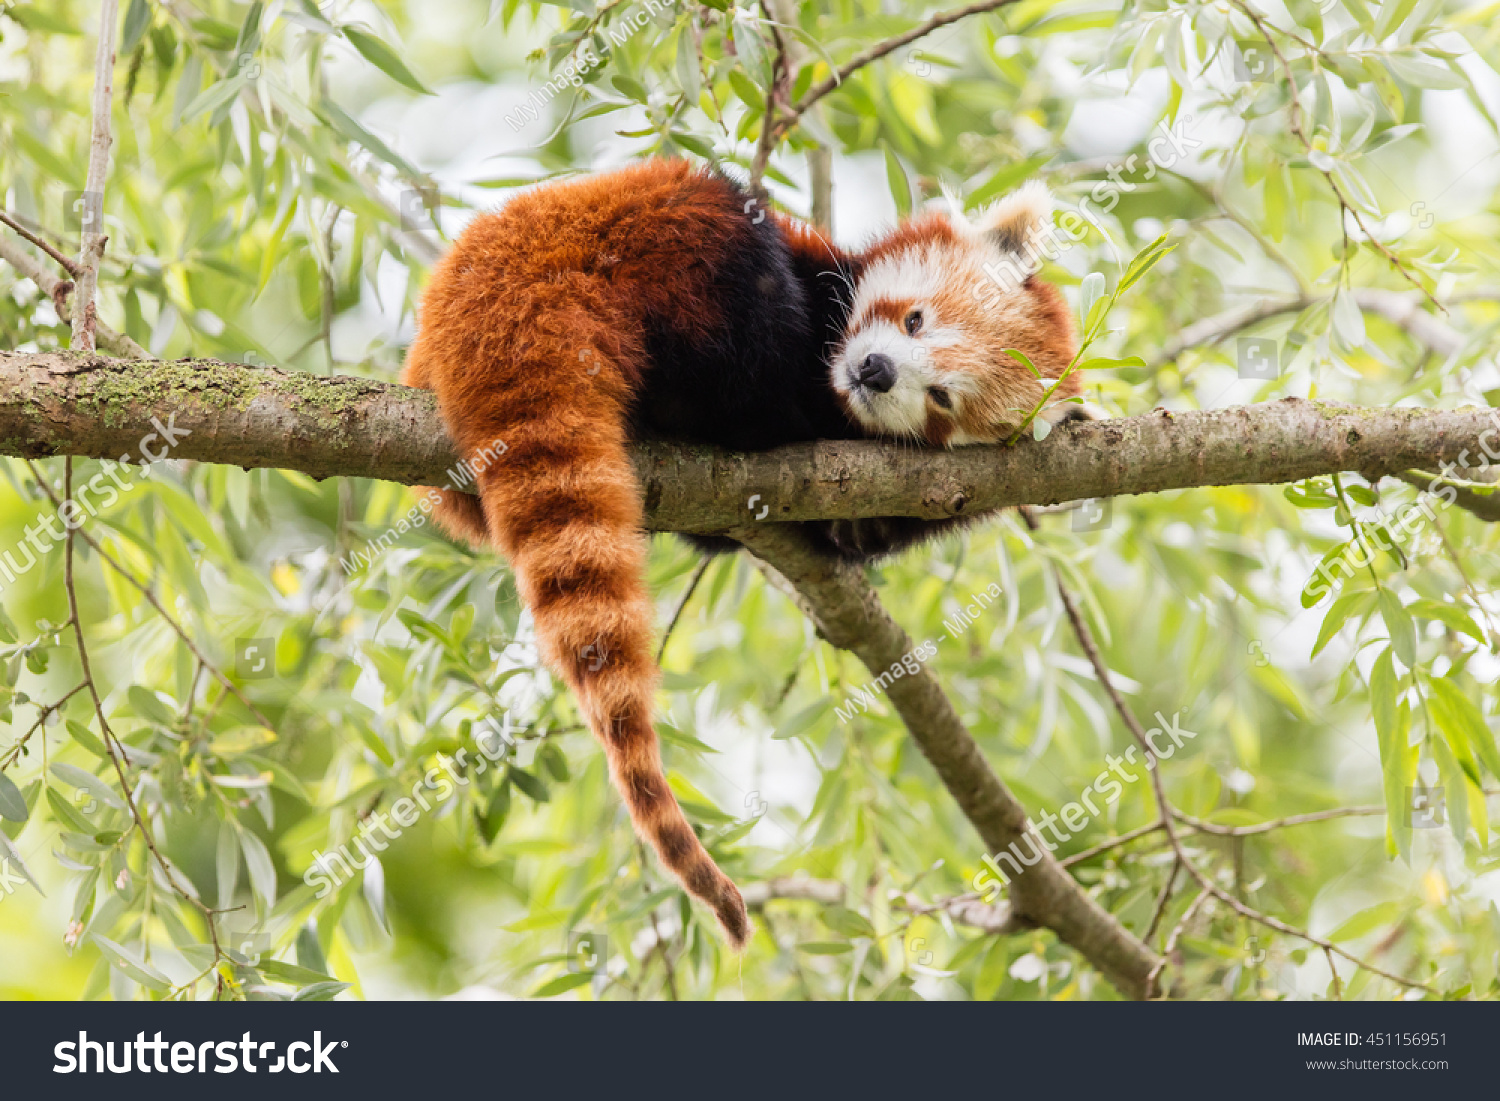 赤いパンダ Firefoxまたはlesser Panda Ailurs Fulgens が木の中で休んでいる の写真素材 今すぐ編集